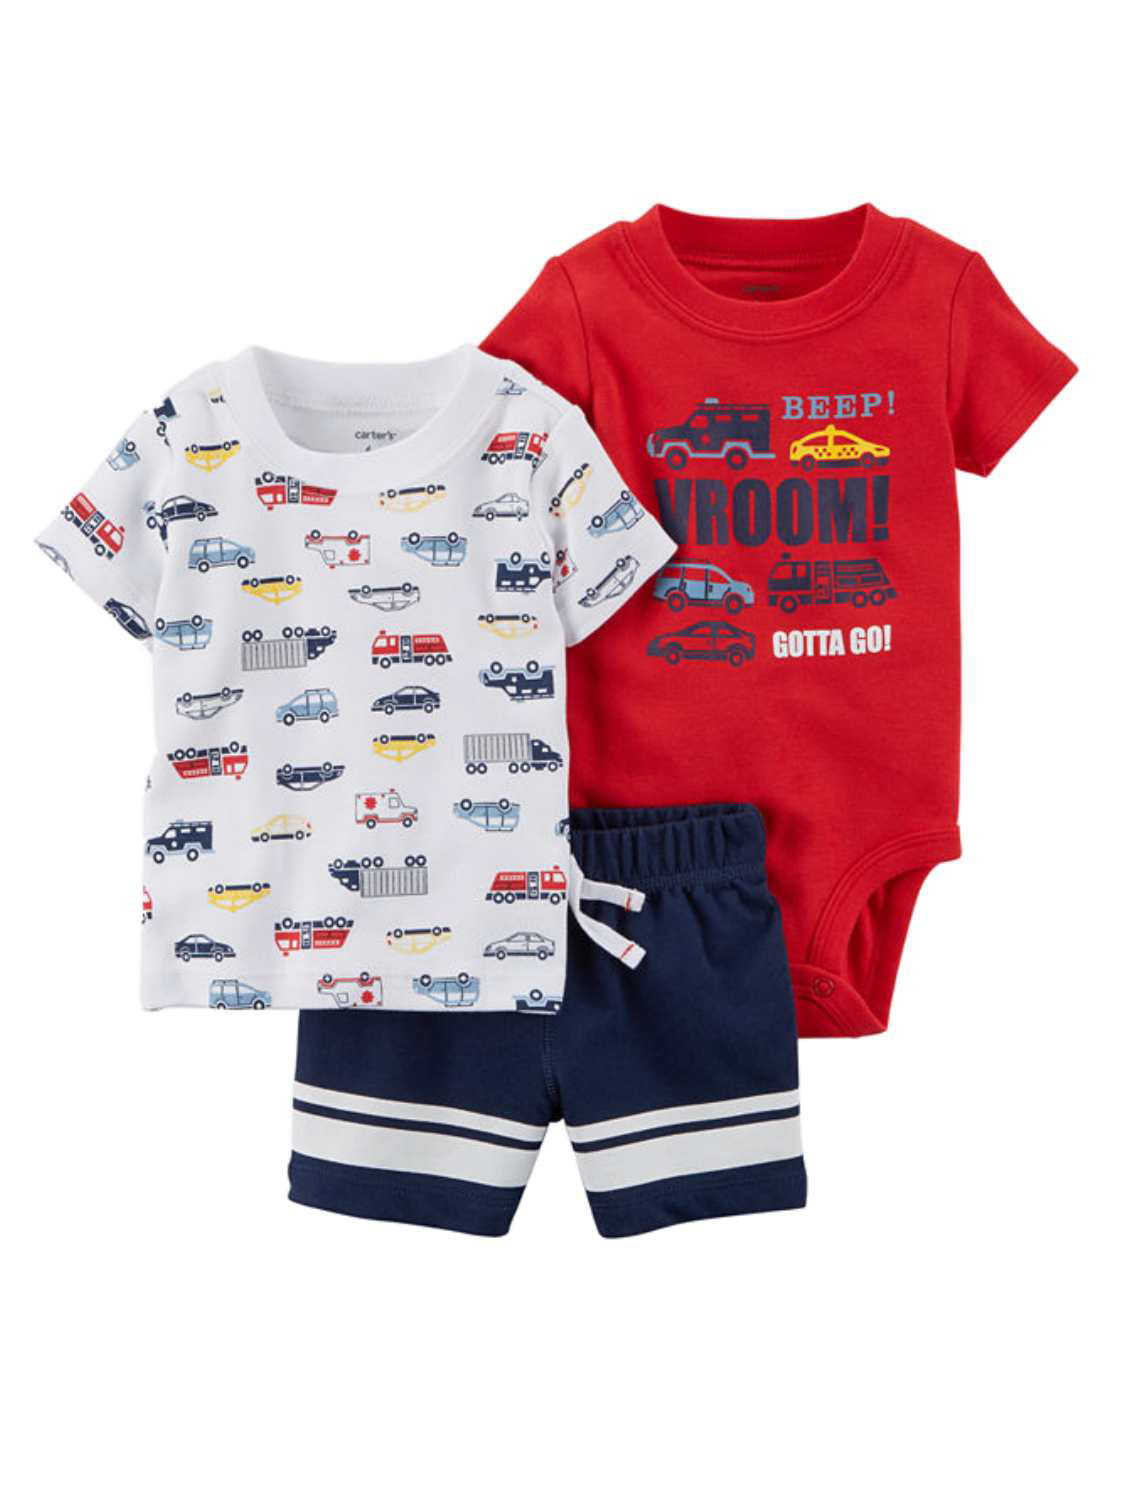 Infant Boys 3PC Baby Outfit Surfs Up Bodysuit Blue Plaid Shirt & Shorts 